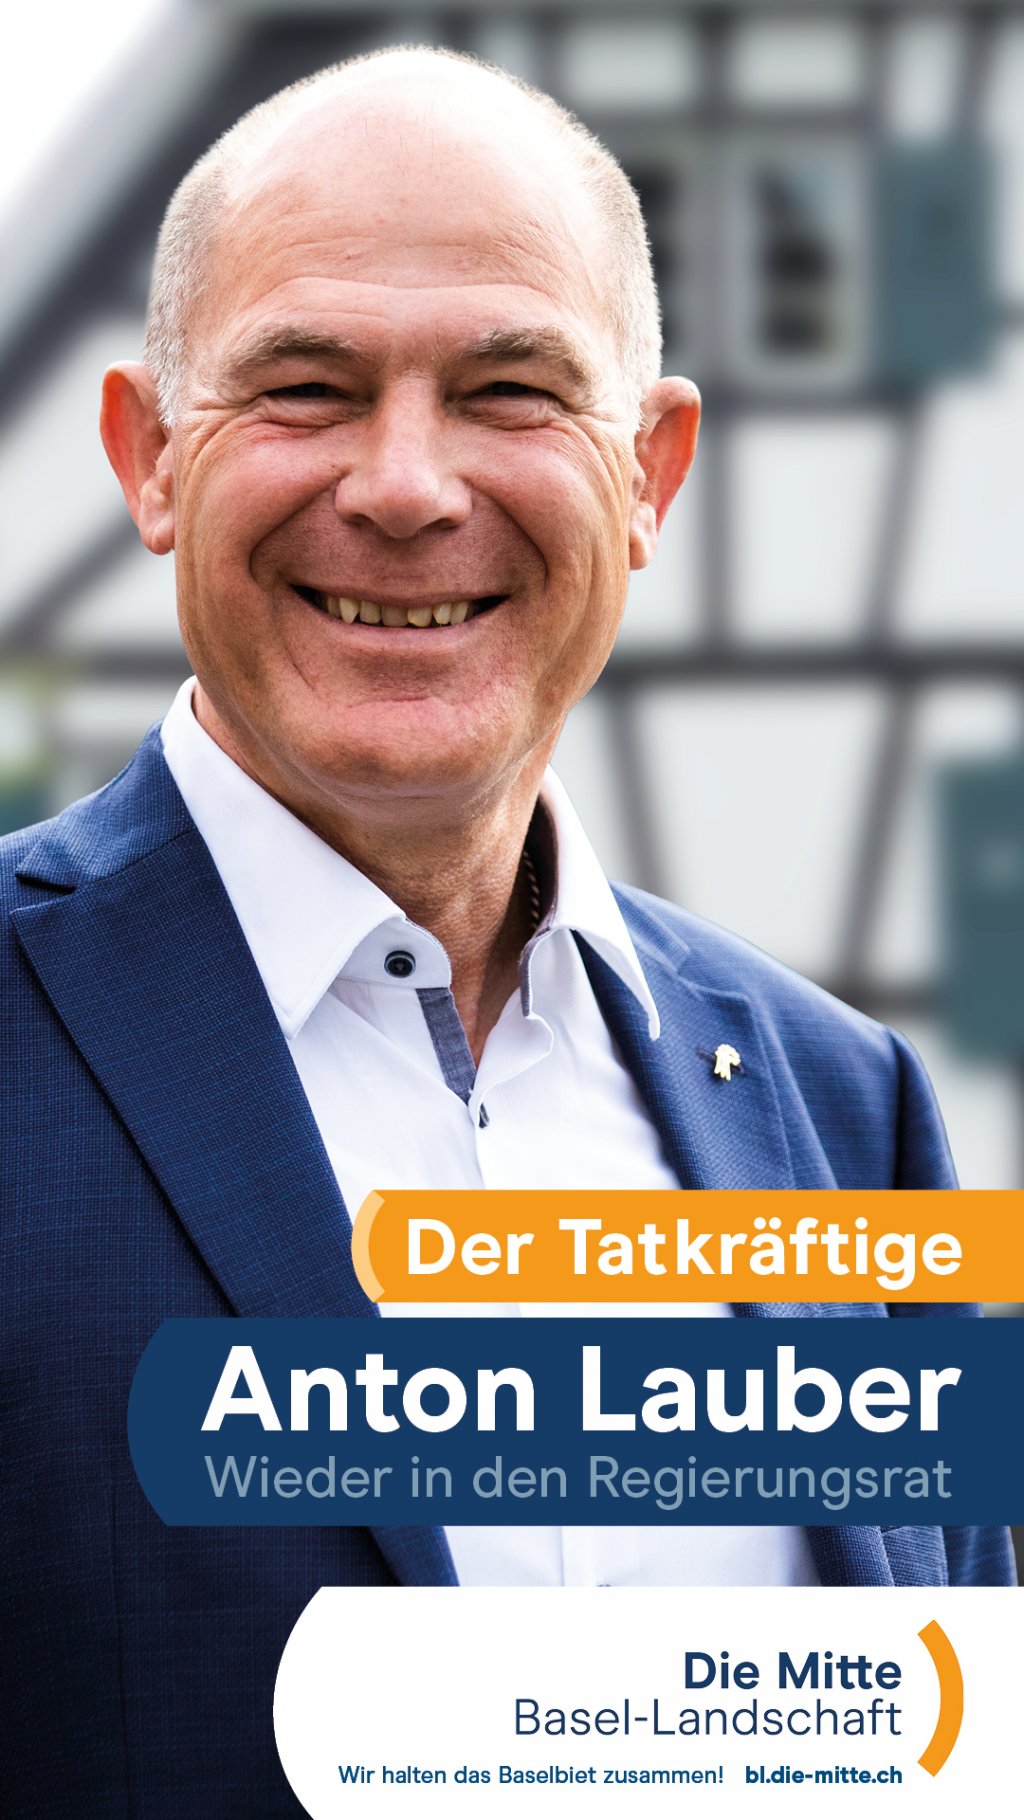 Regierungsrat Anton Lauber